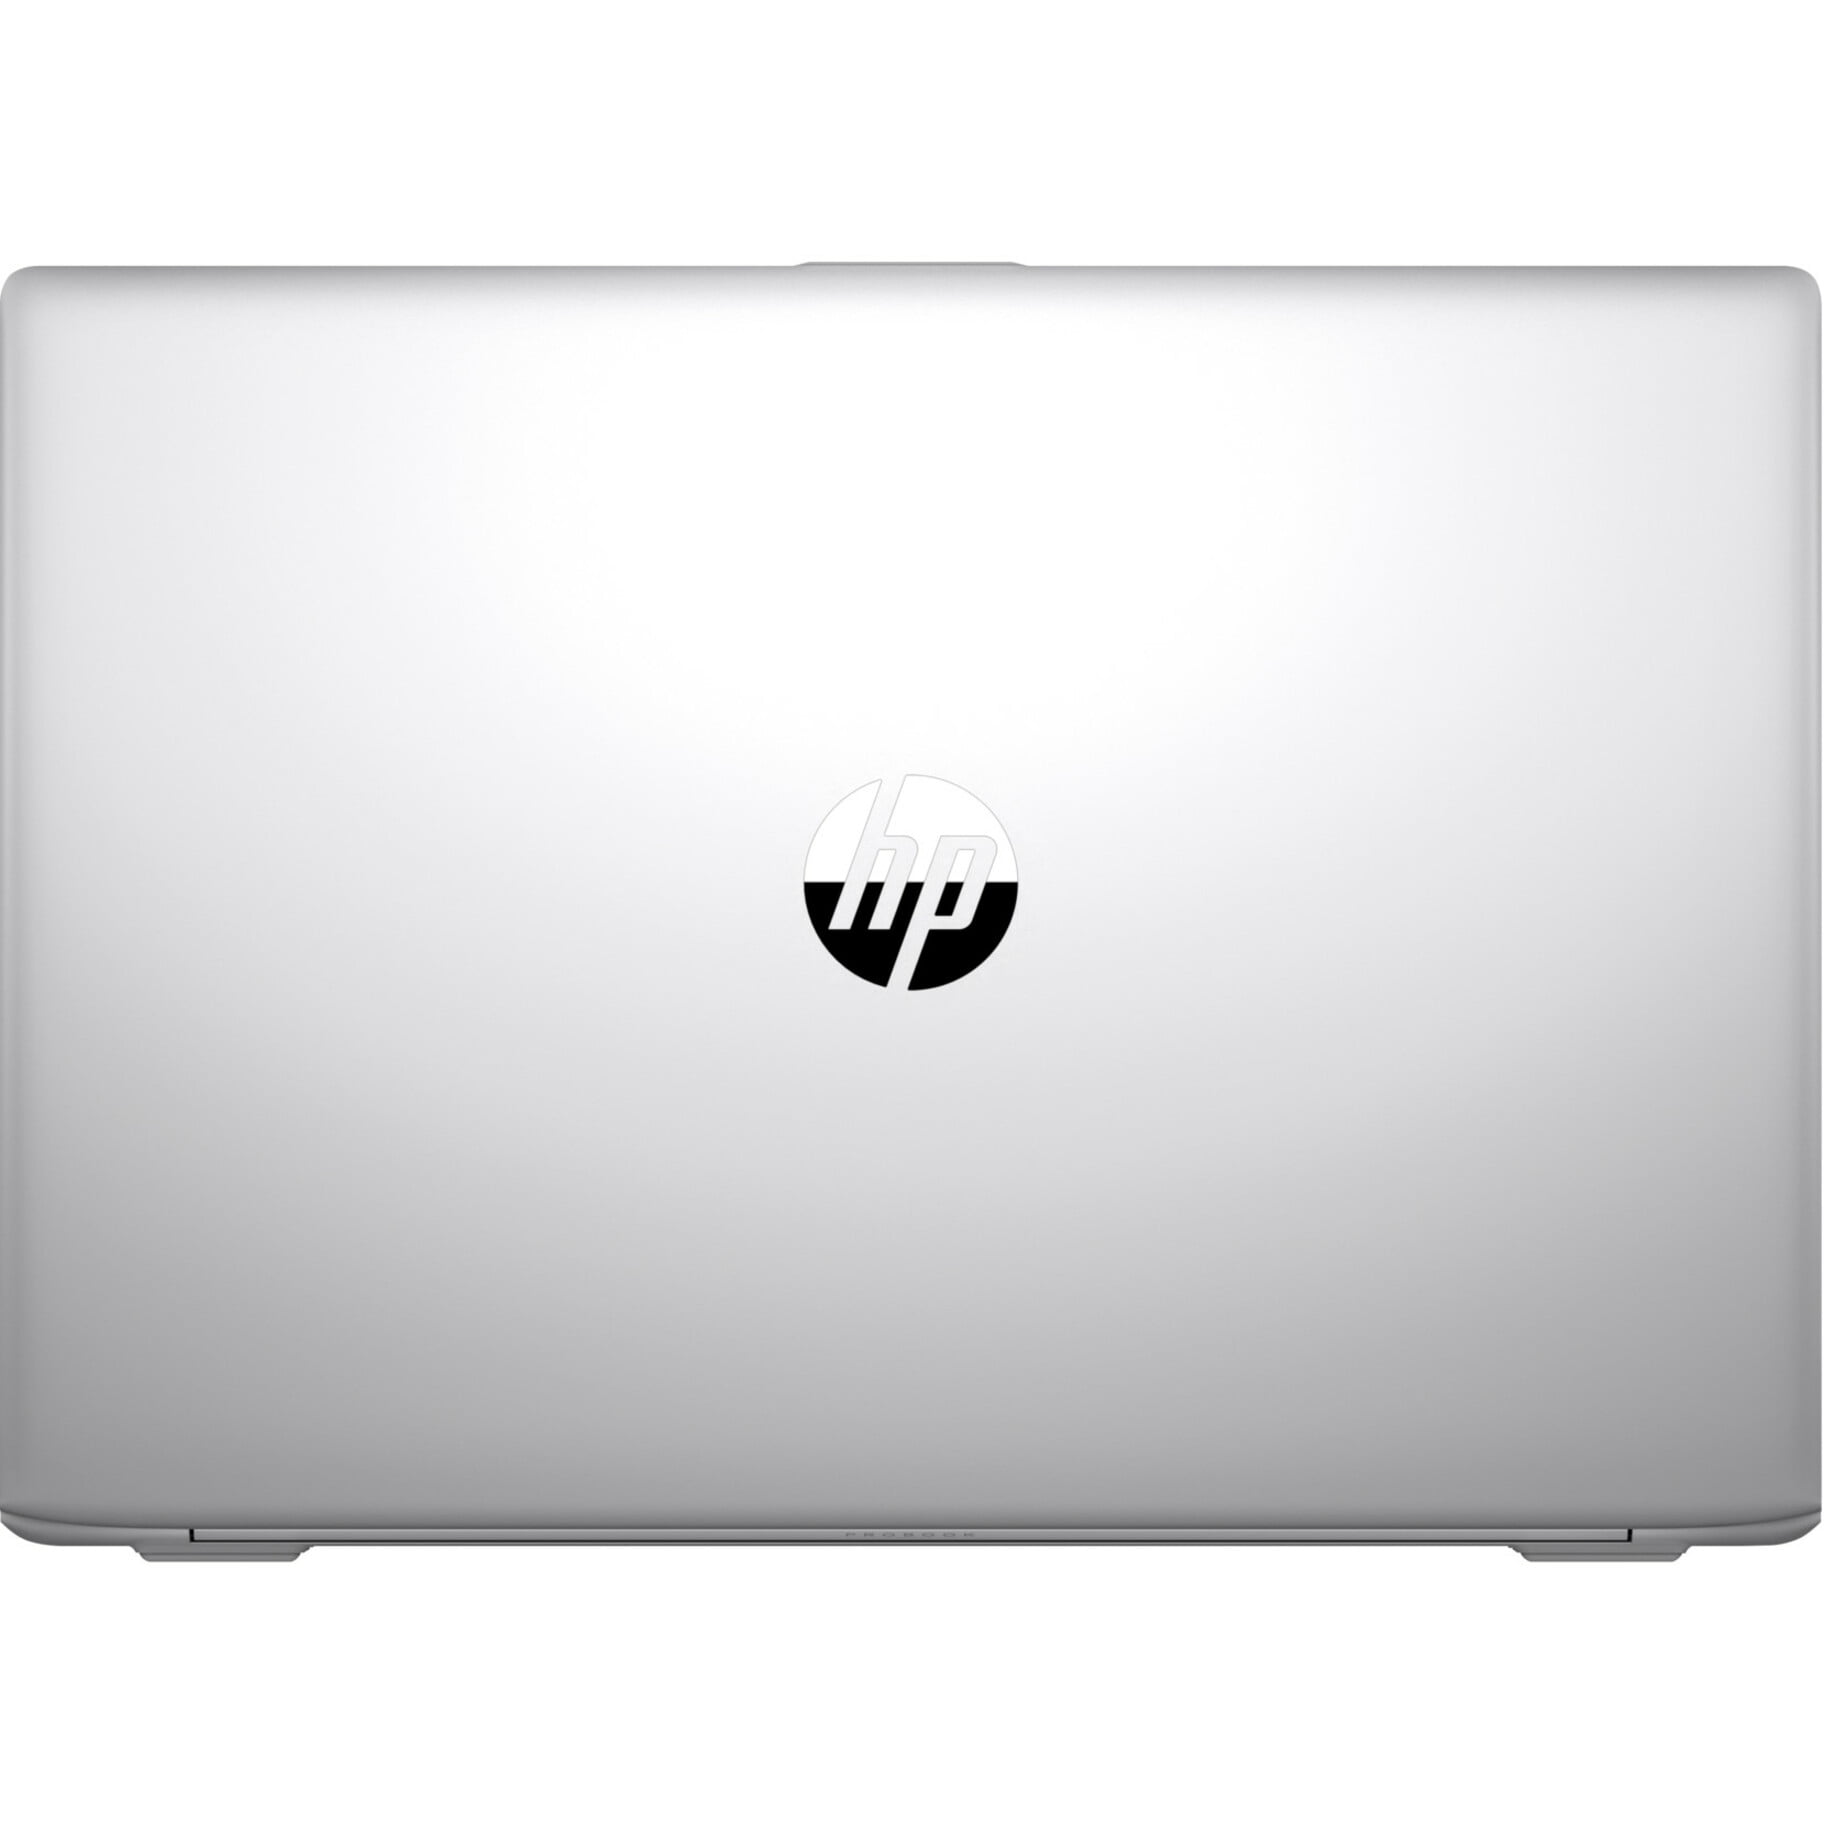 HP ProBook 450 G5 Notebook PC (2TA30UT)Windows 10 Pro 64 Intel